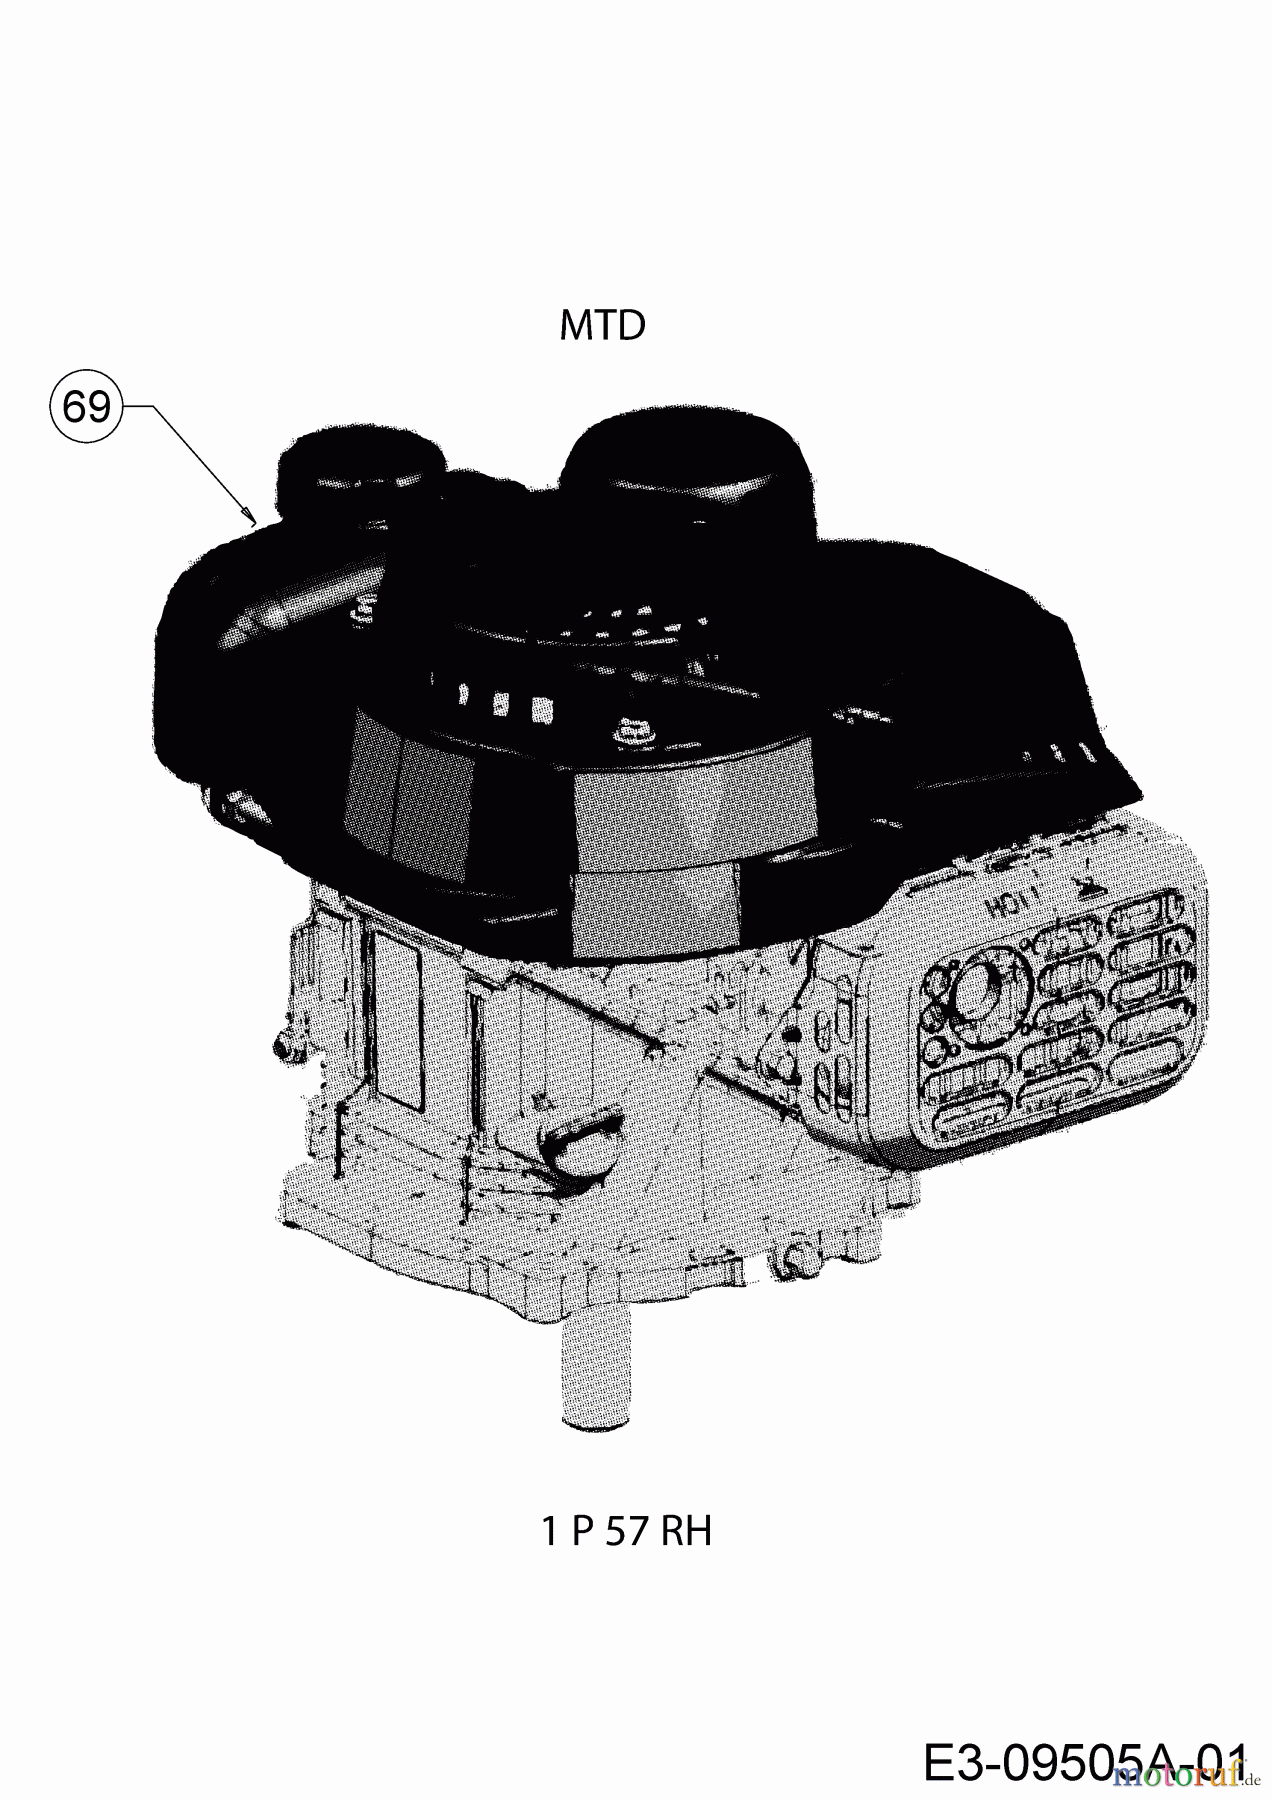  MTD Motormäher mit Antrieb Smart 42 SPO 12D-LASJ600  (2020) Motor MTD